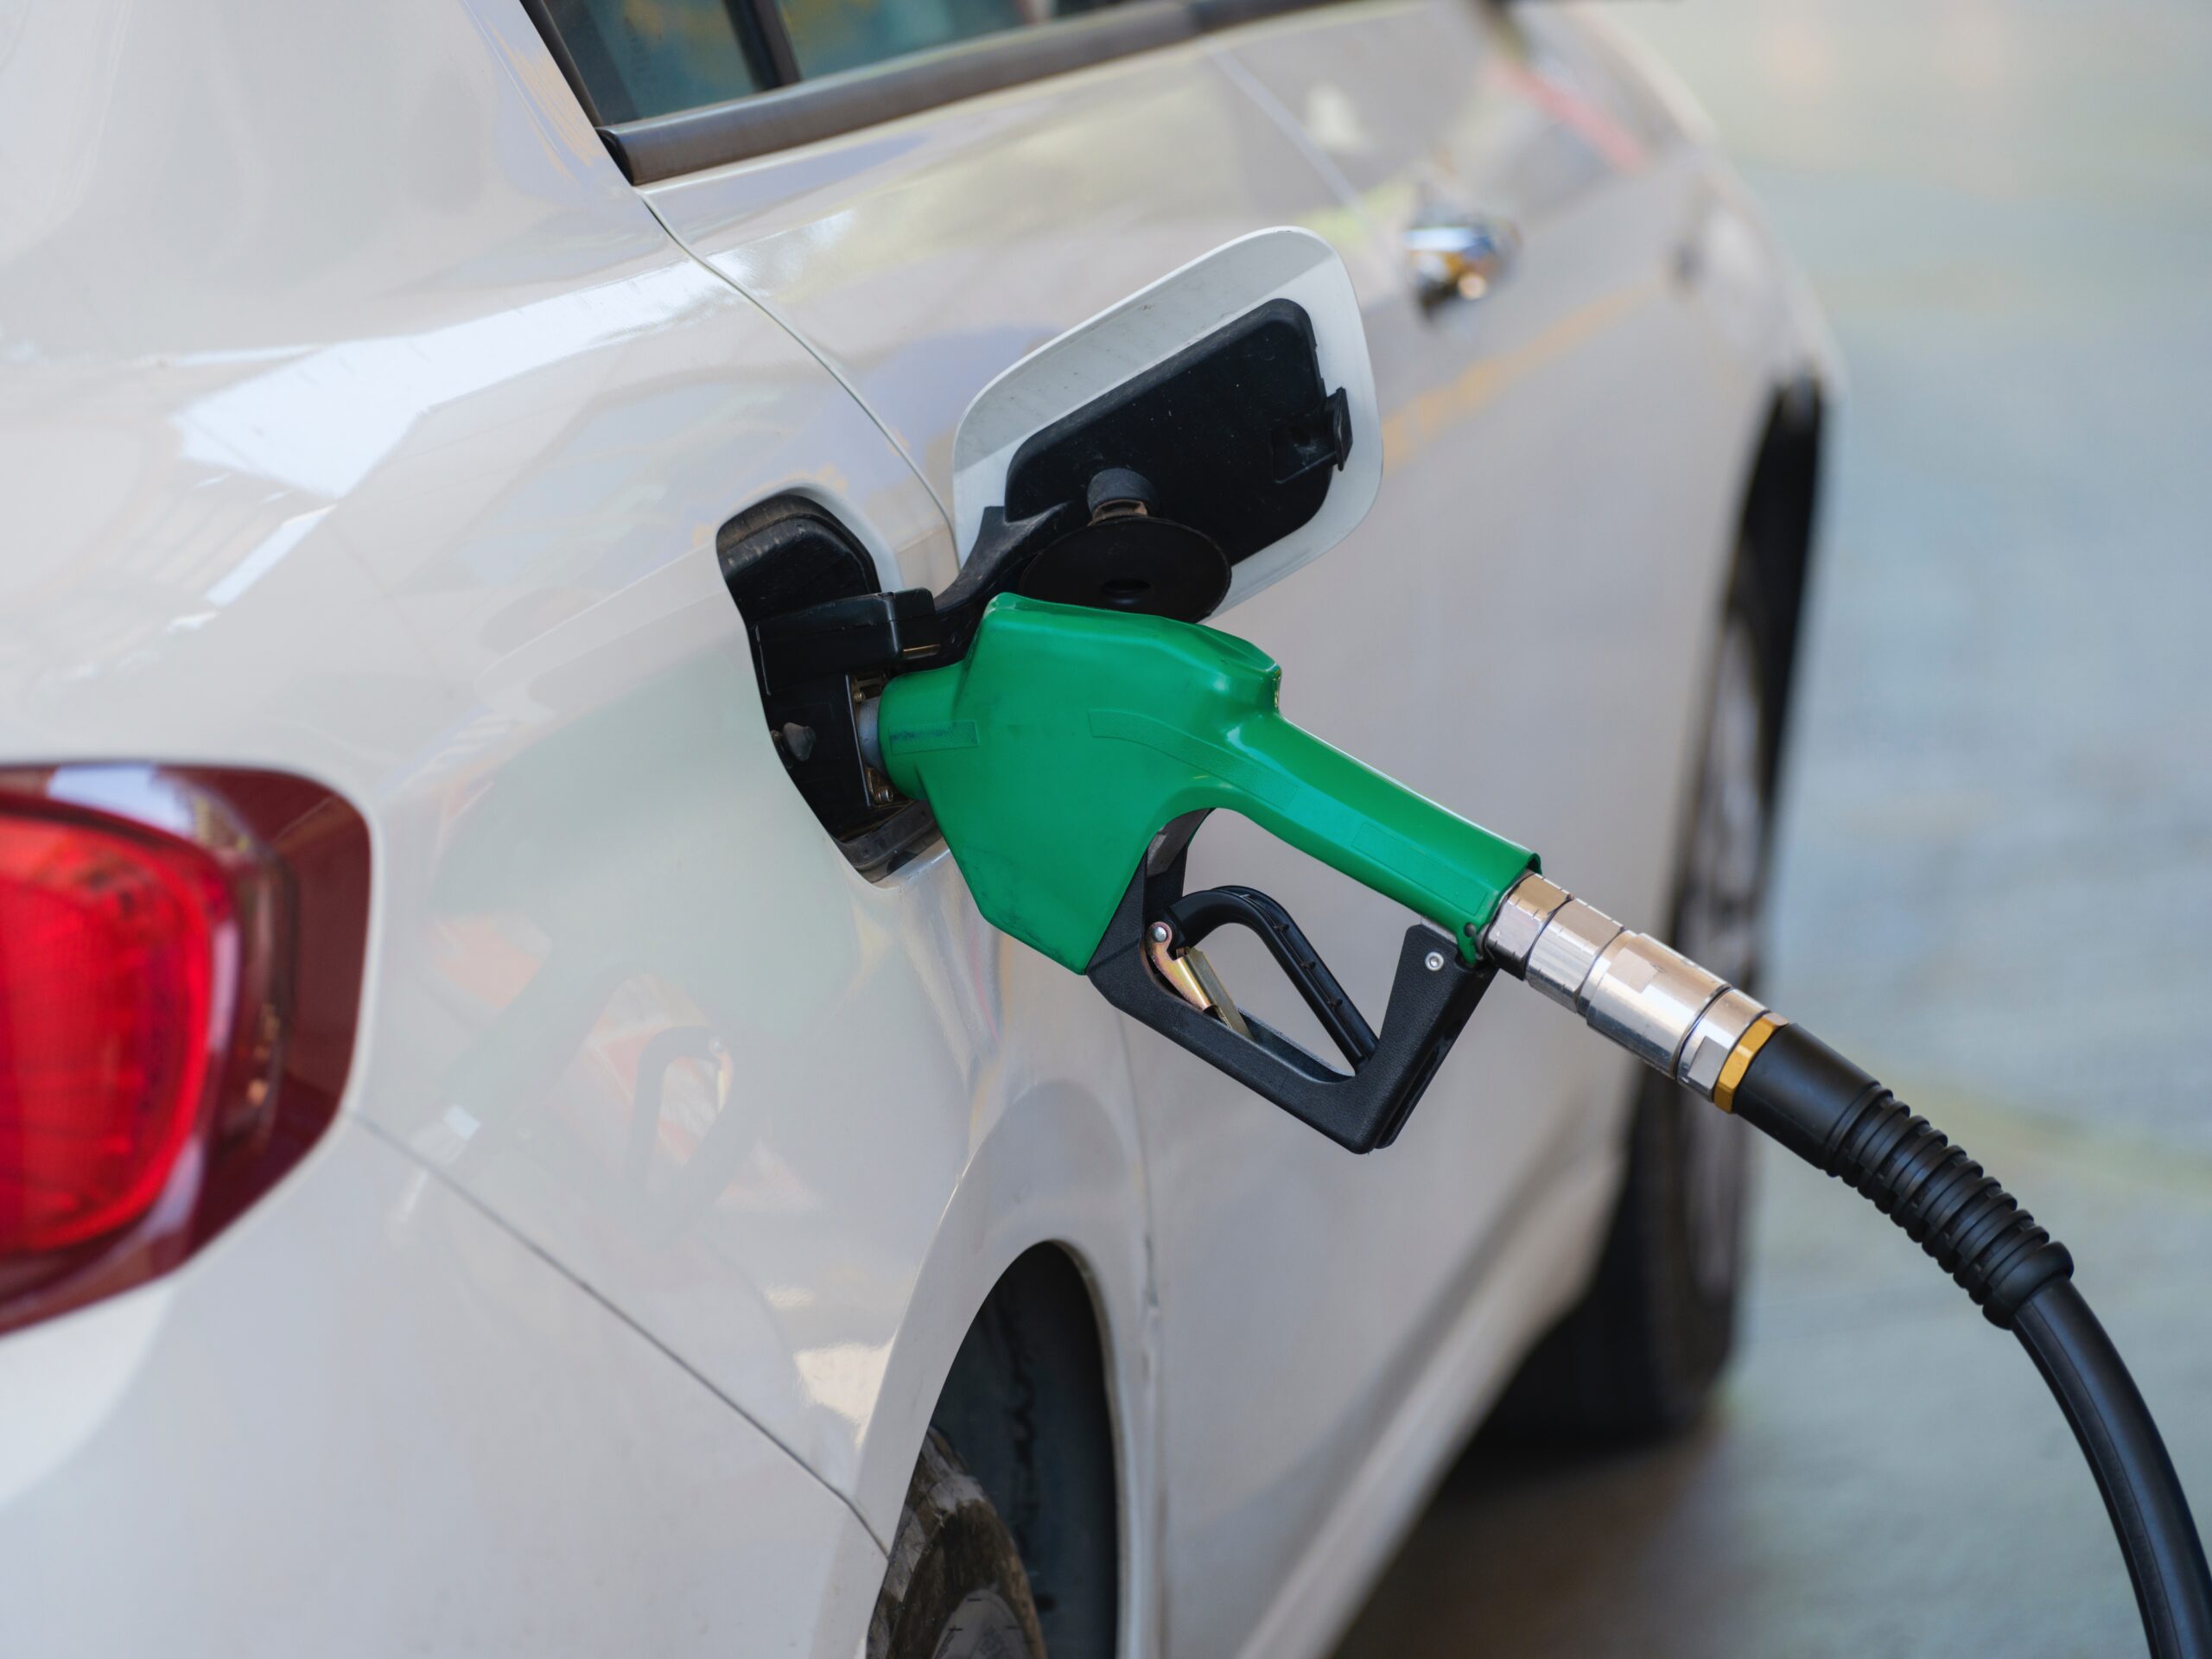 Aumento no petróleo faz crescer pressão por reajuste no preço dos combustíveis - Foto: Reprodução/Unsplash/engyn akyurt